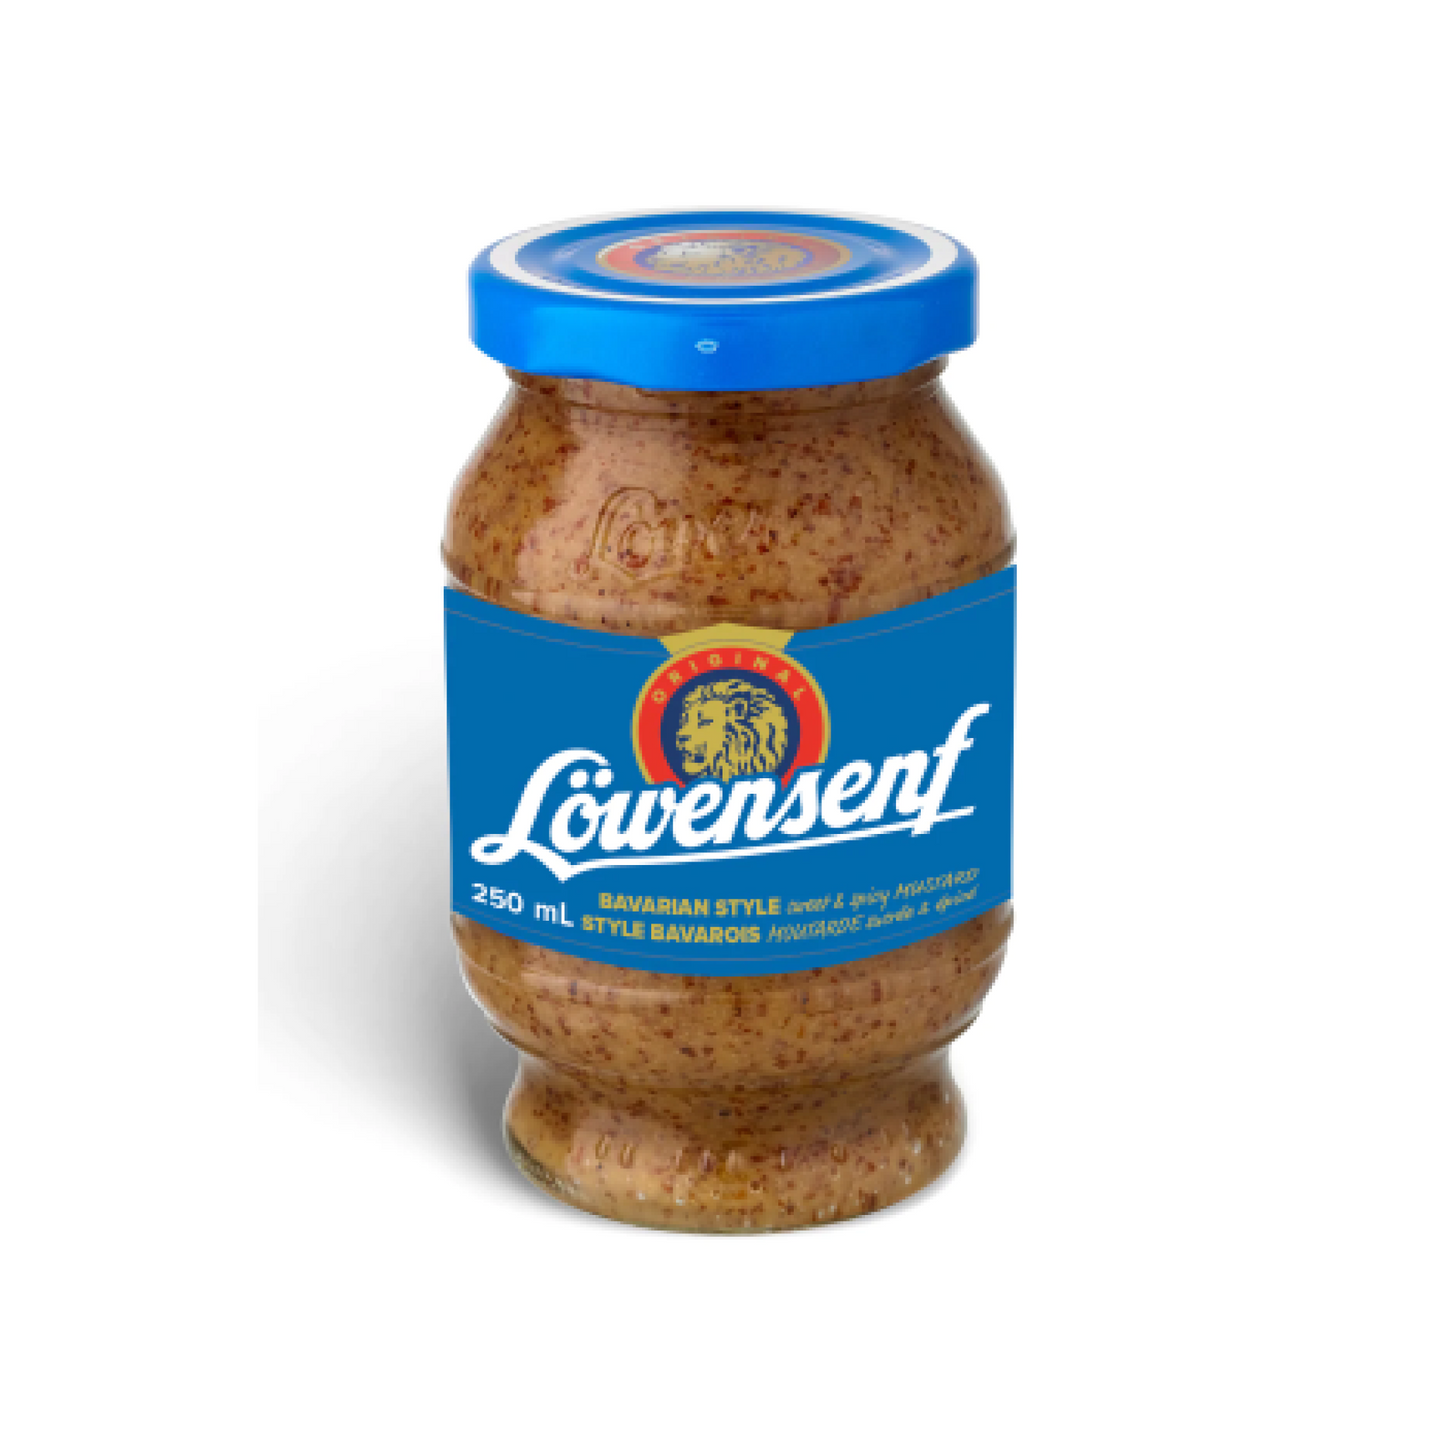 Löwensenf Bavarian Style Sweet & Spicy Mustard 250ml